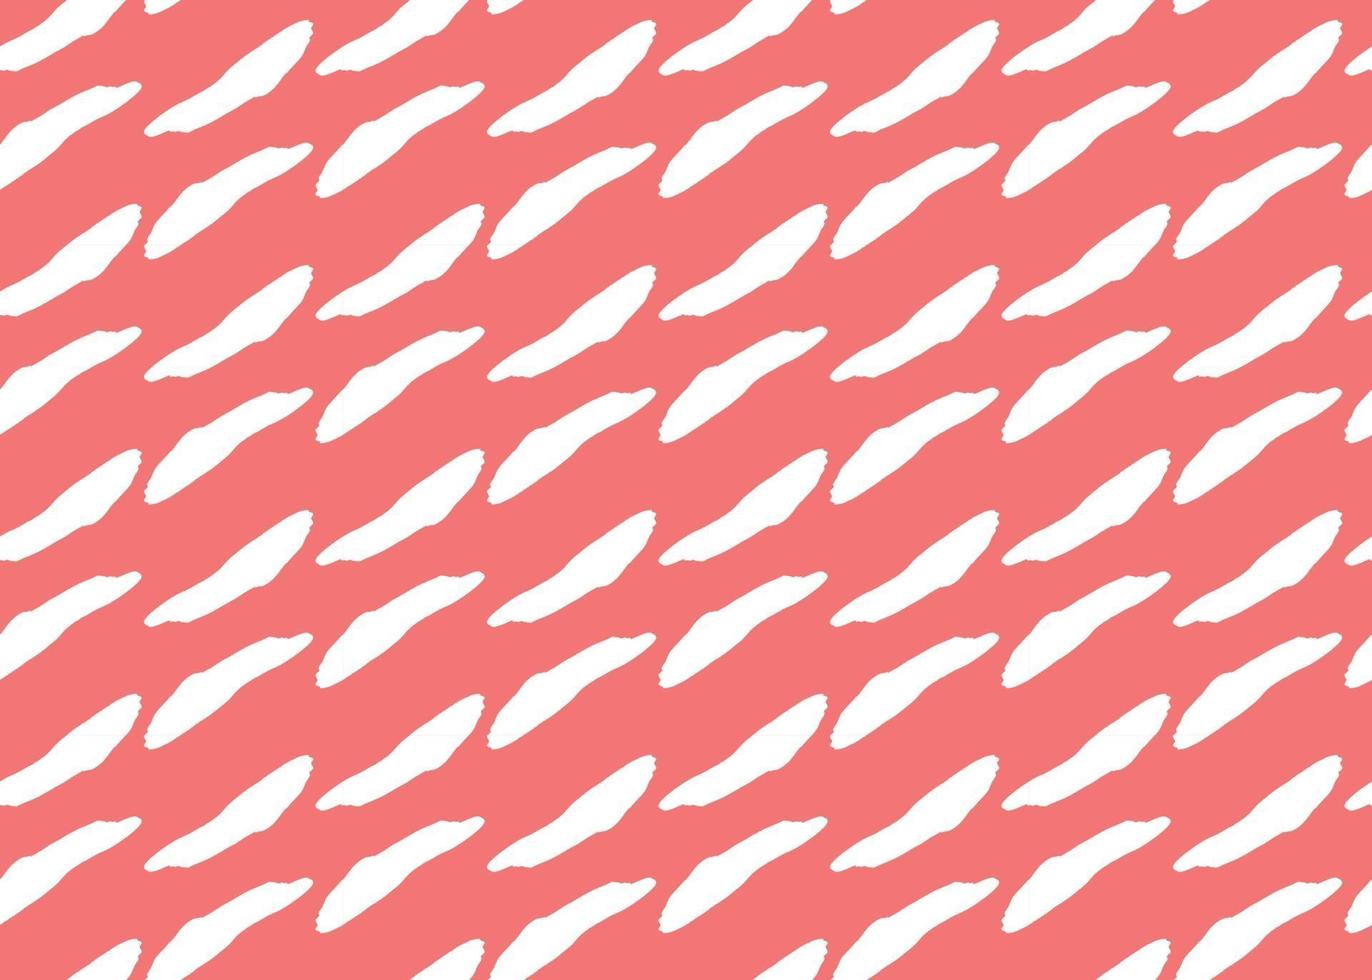 Vektor Textur Hintergrund, nahtloses Muster. handgezeichnete, rote, weiße Farben.